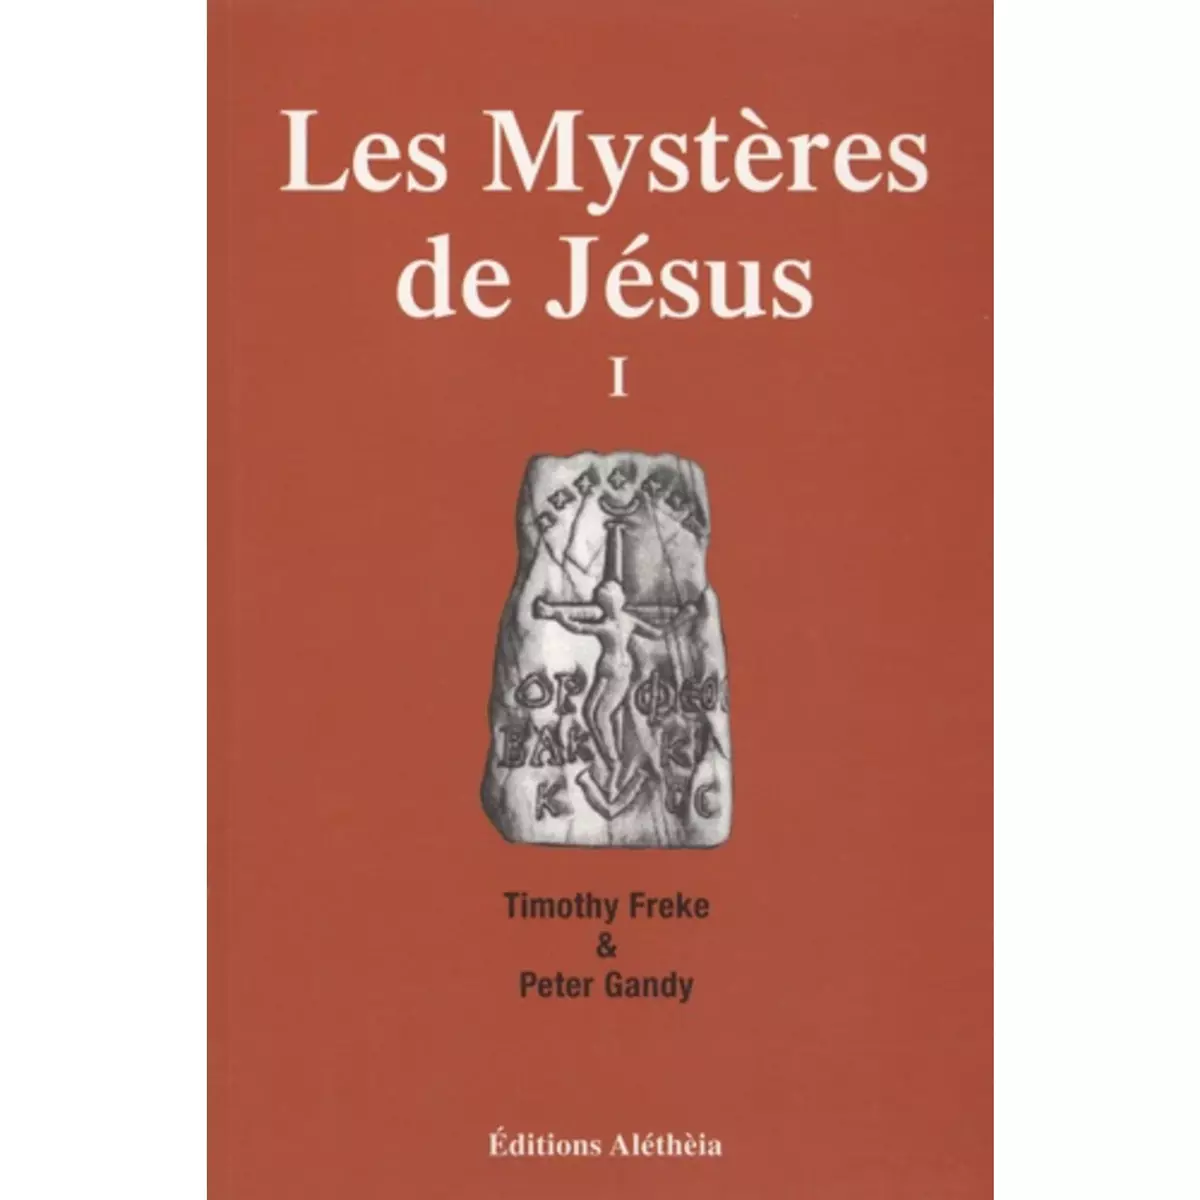  LES MYSTERES DE JESUS. TOME 1, LE CHRISTIANISME ORIGINEL PROVIENDRAIT-IL D'UNE SPIRITUALITE ANTIQUE ET UNIVERSELLE ?, Freke Timothy